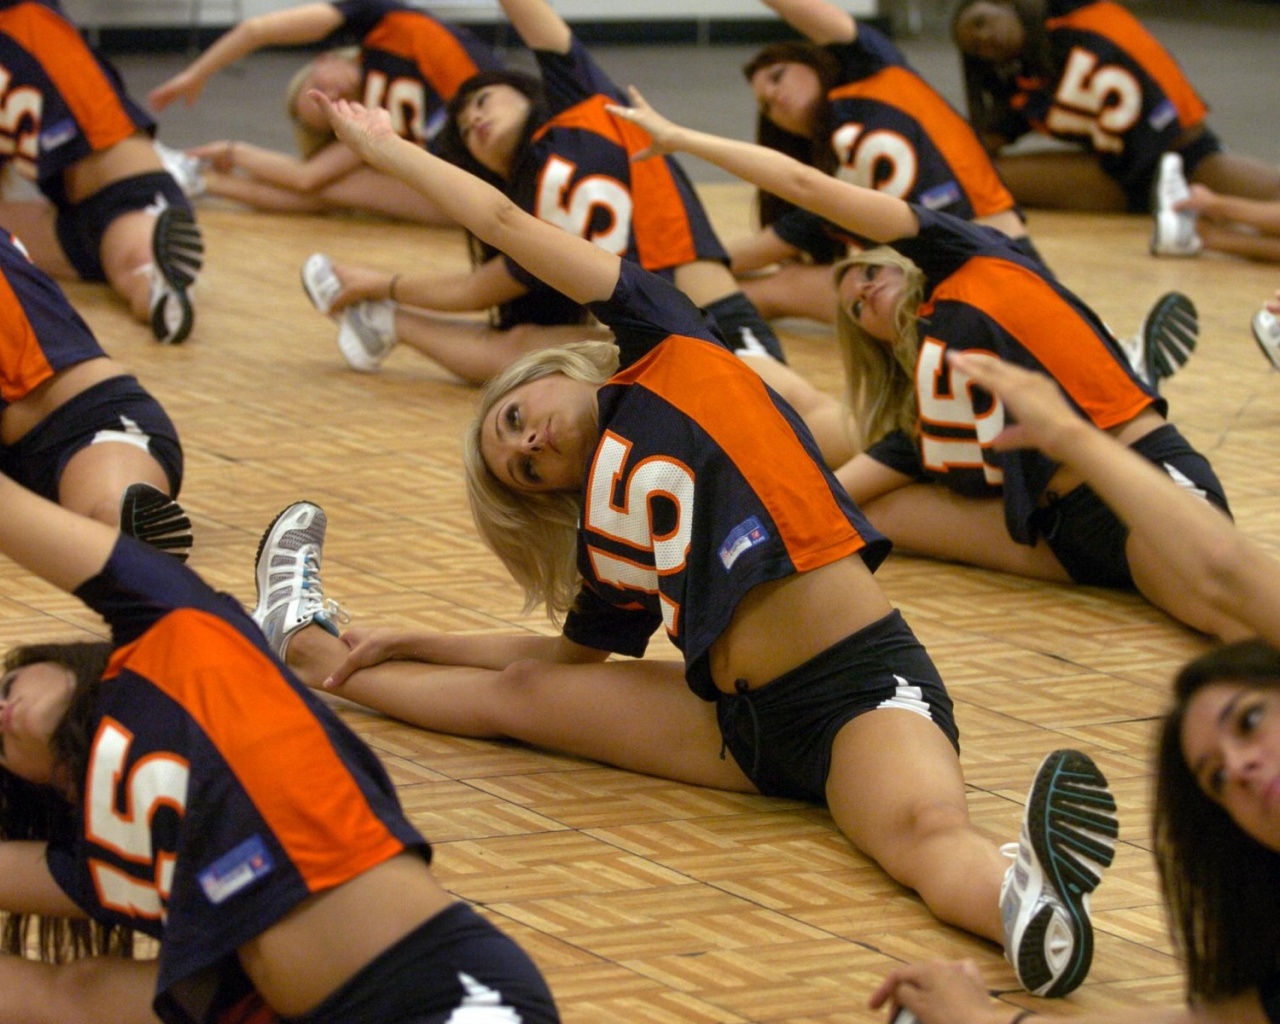 Denver Broncos Cheerleaders Practicing